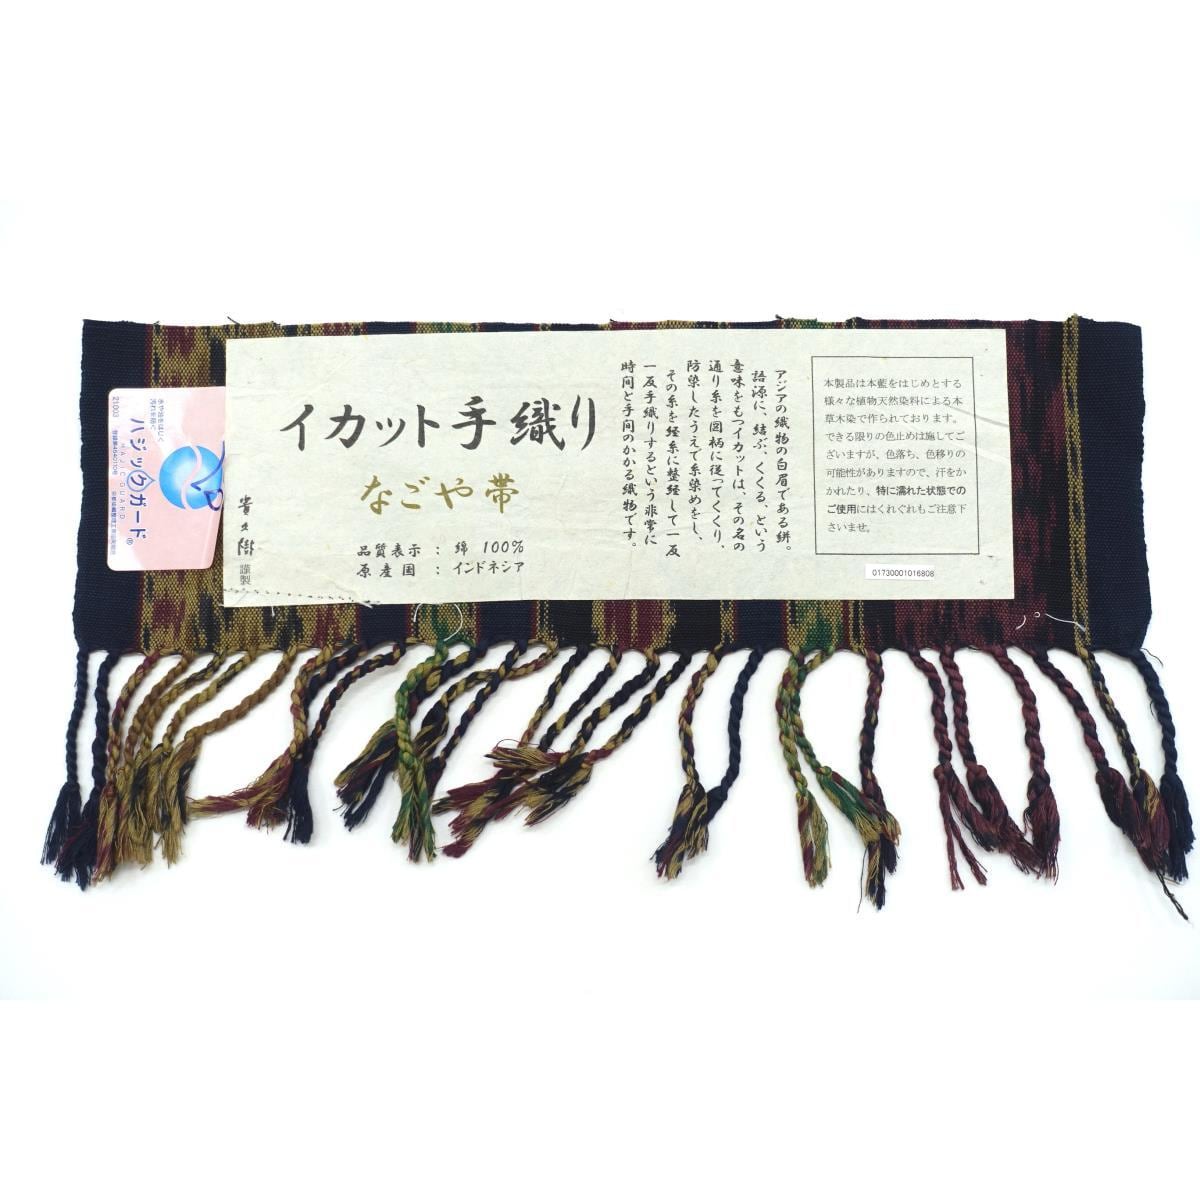 [Unused items] Nagoya obi Takakuki Ikat Zento pattern